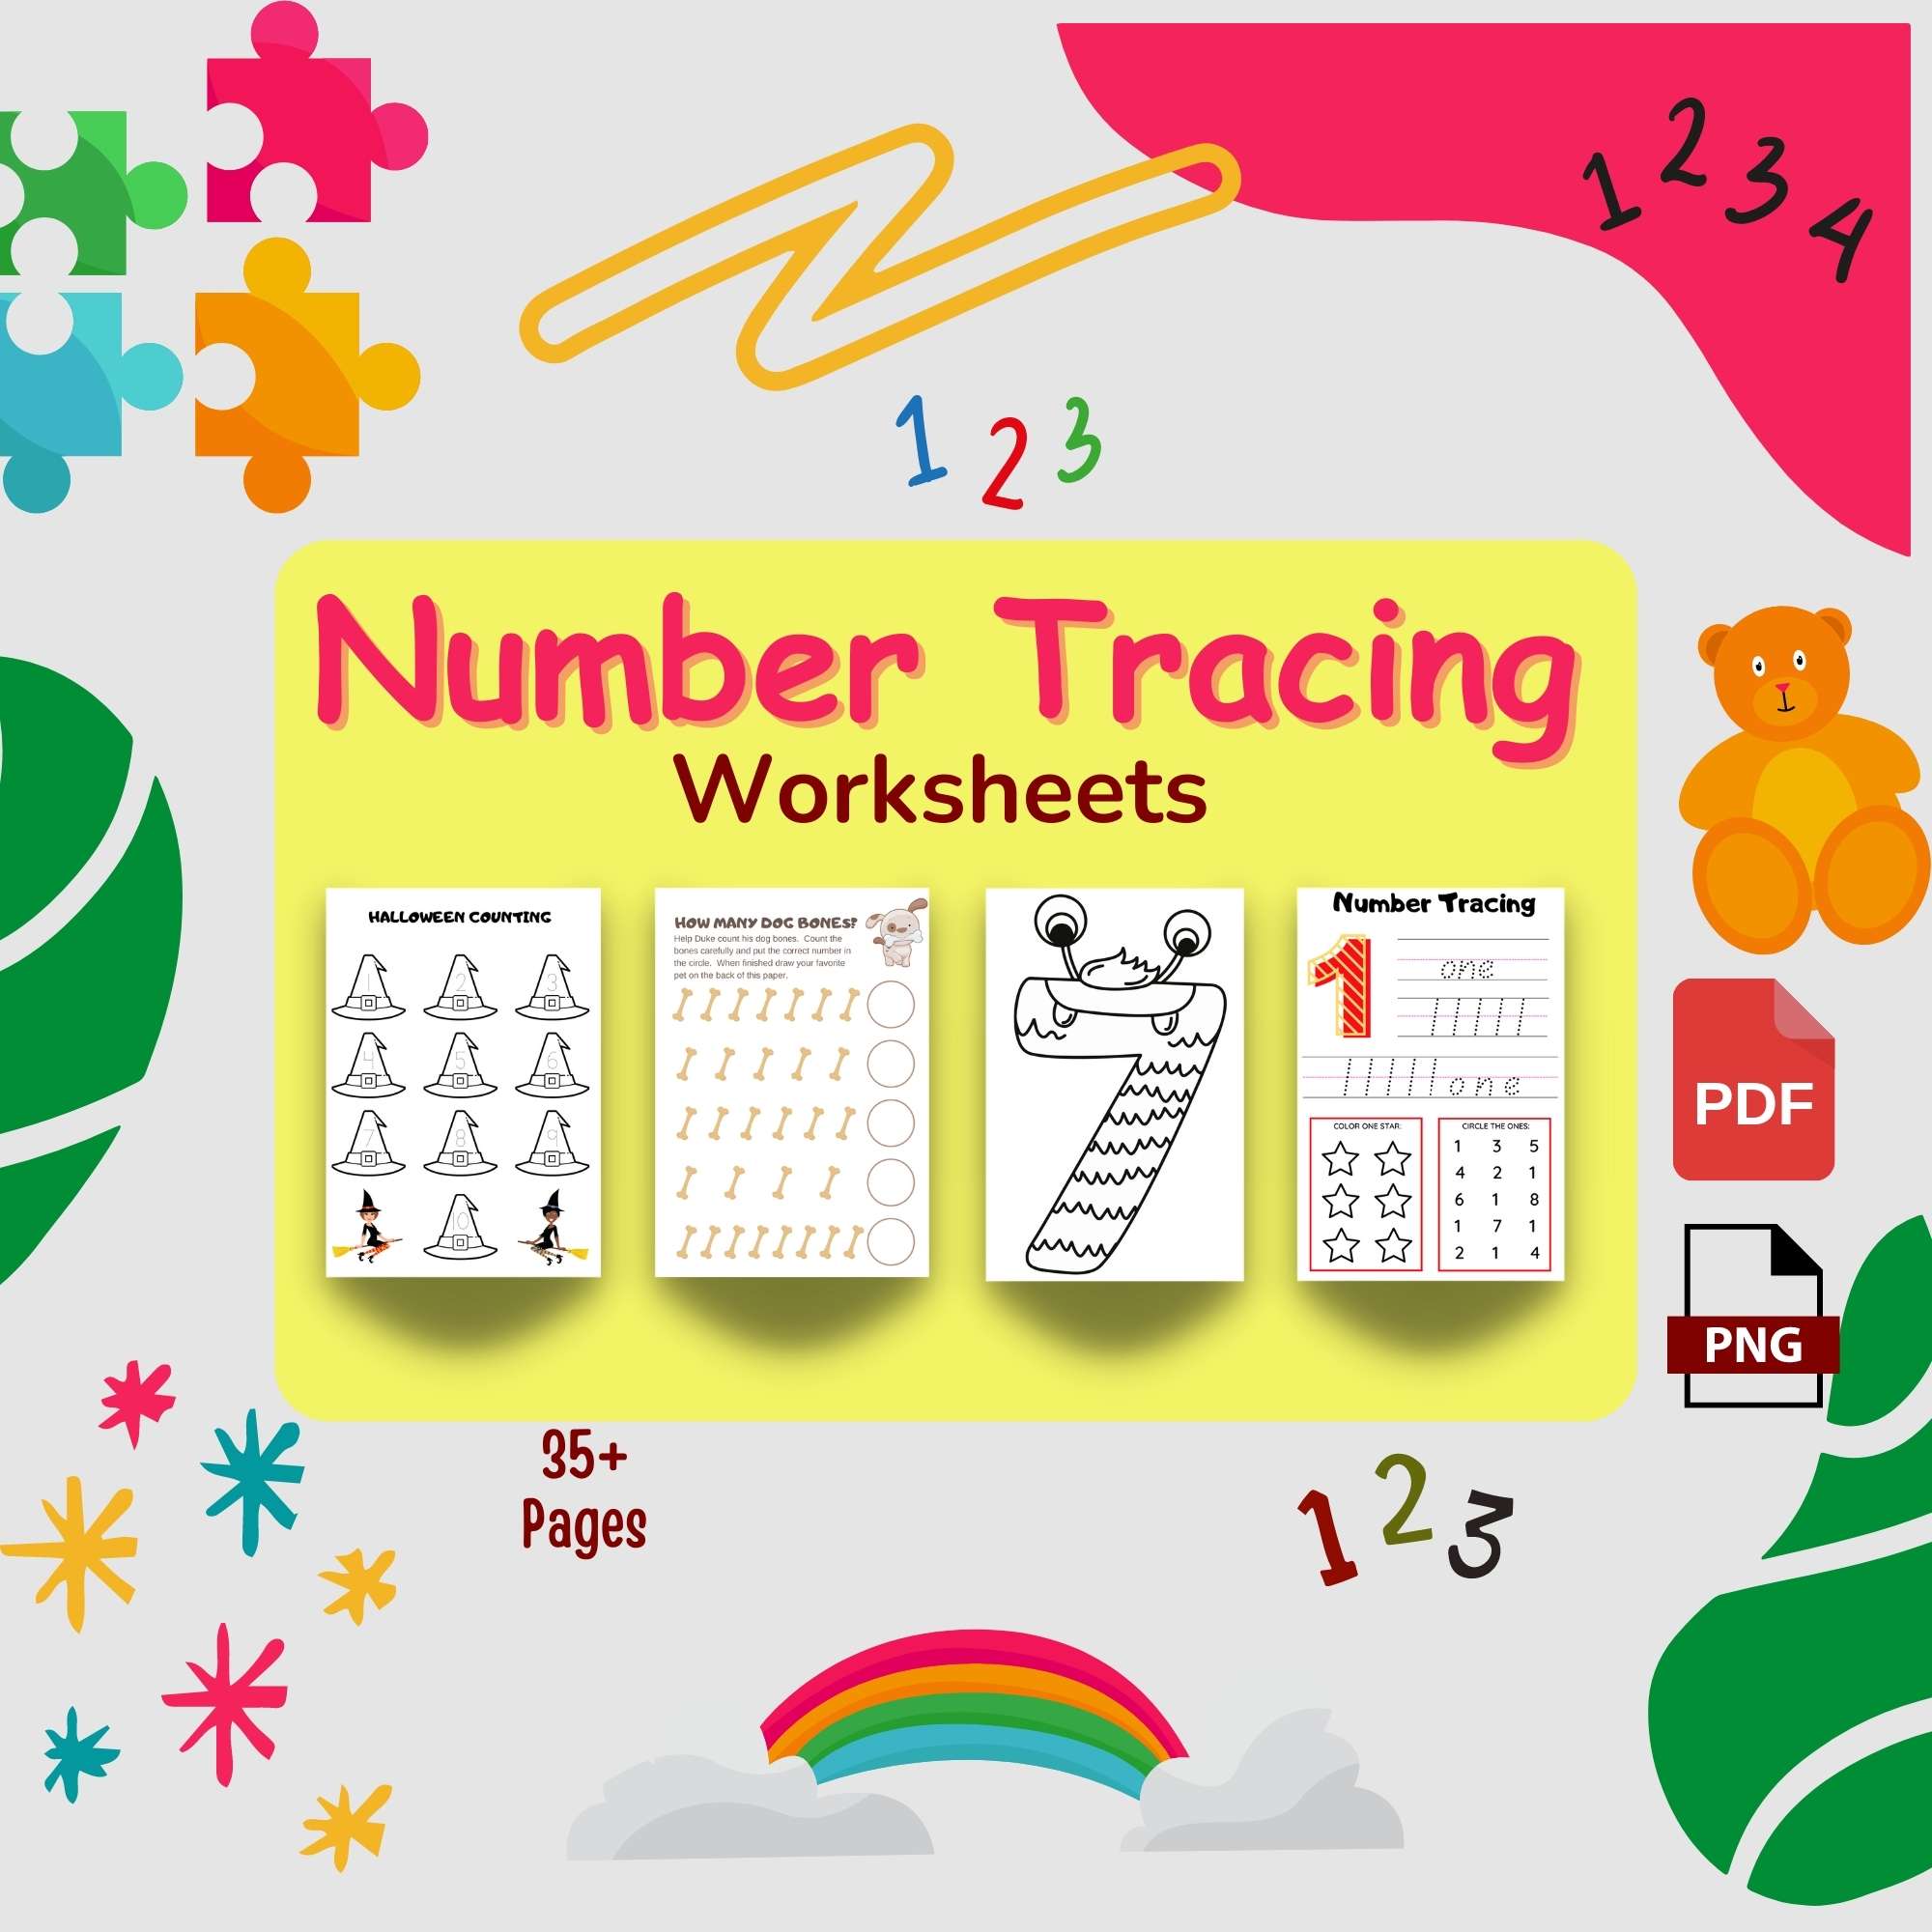 Kindergarten Math Number Sense Activities Writing Numbers 1-10 Practice preview image.